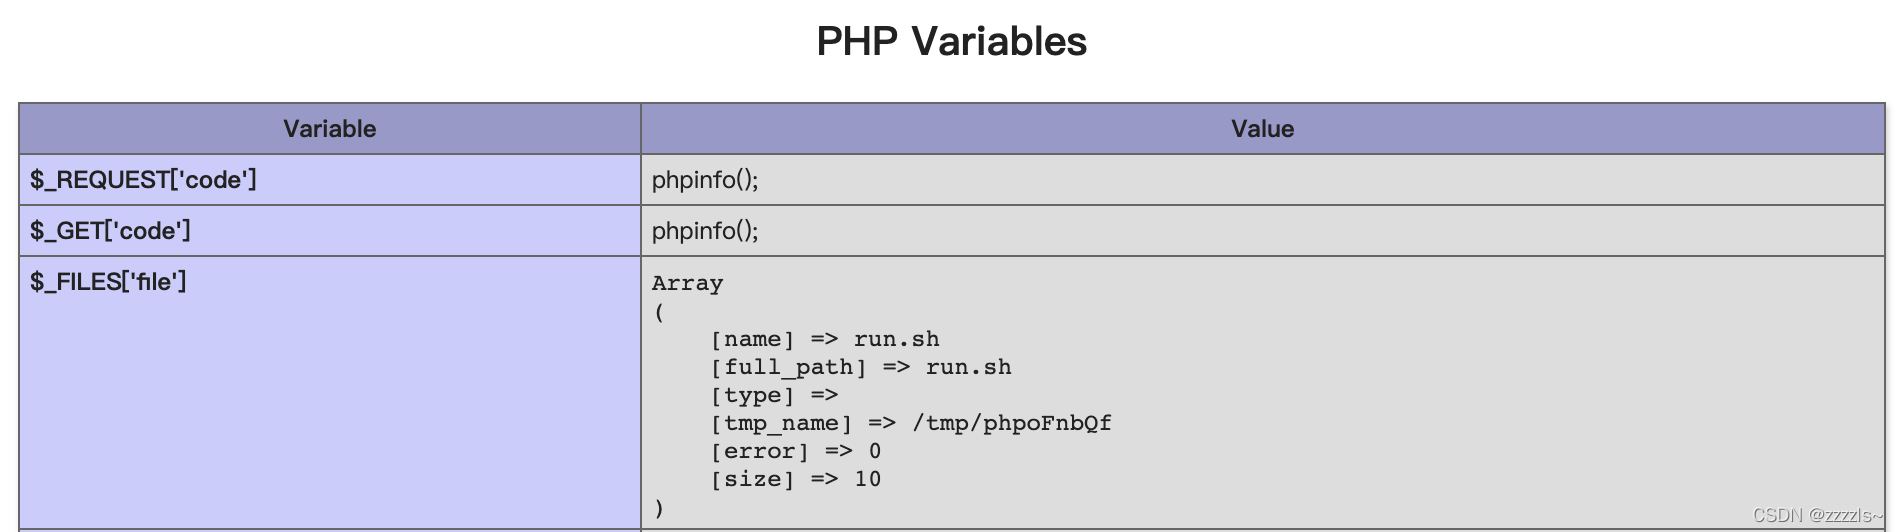 利用PHP POST临时文件机制实现任意文件上传的方法详解